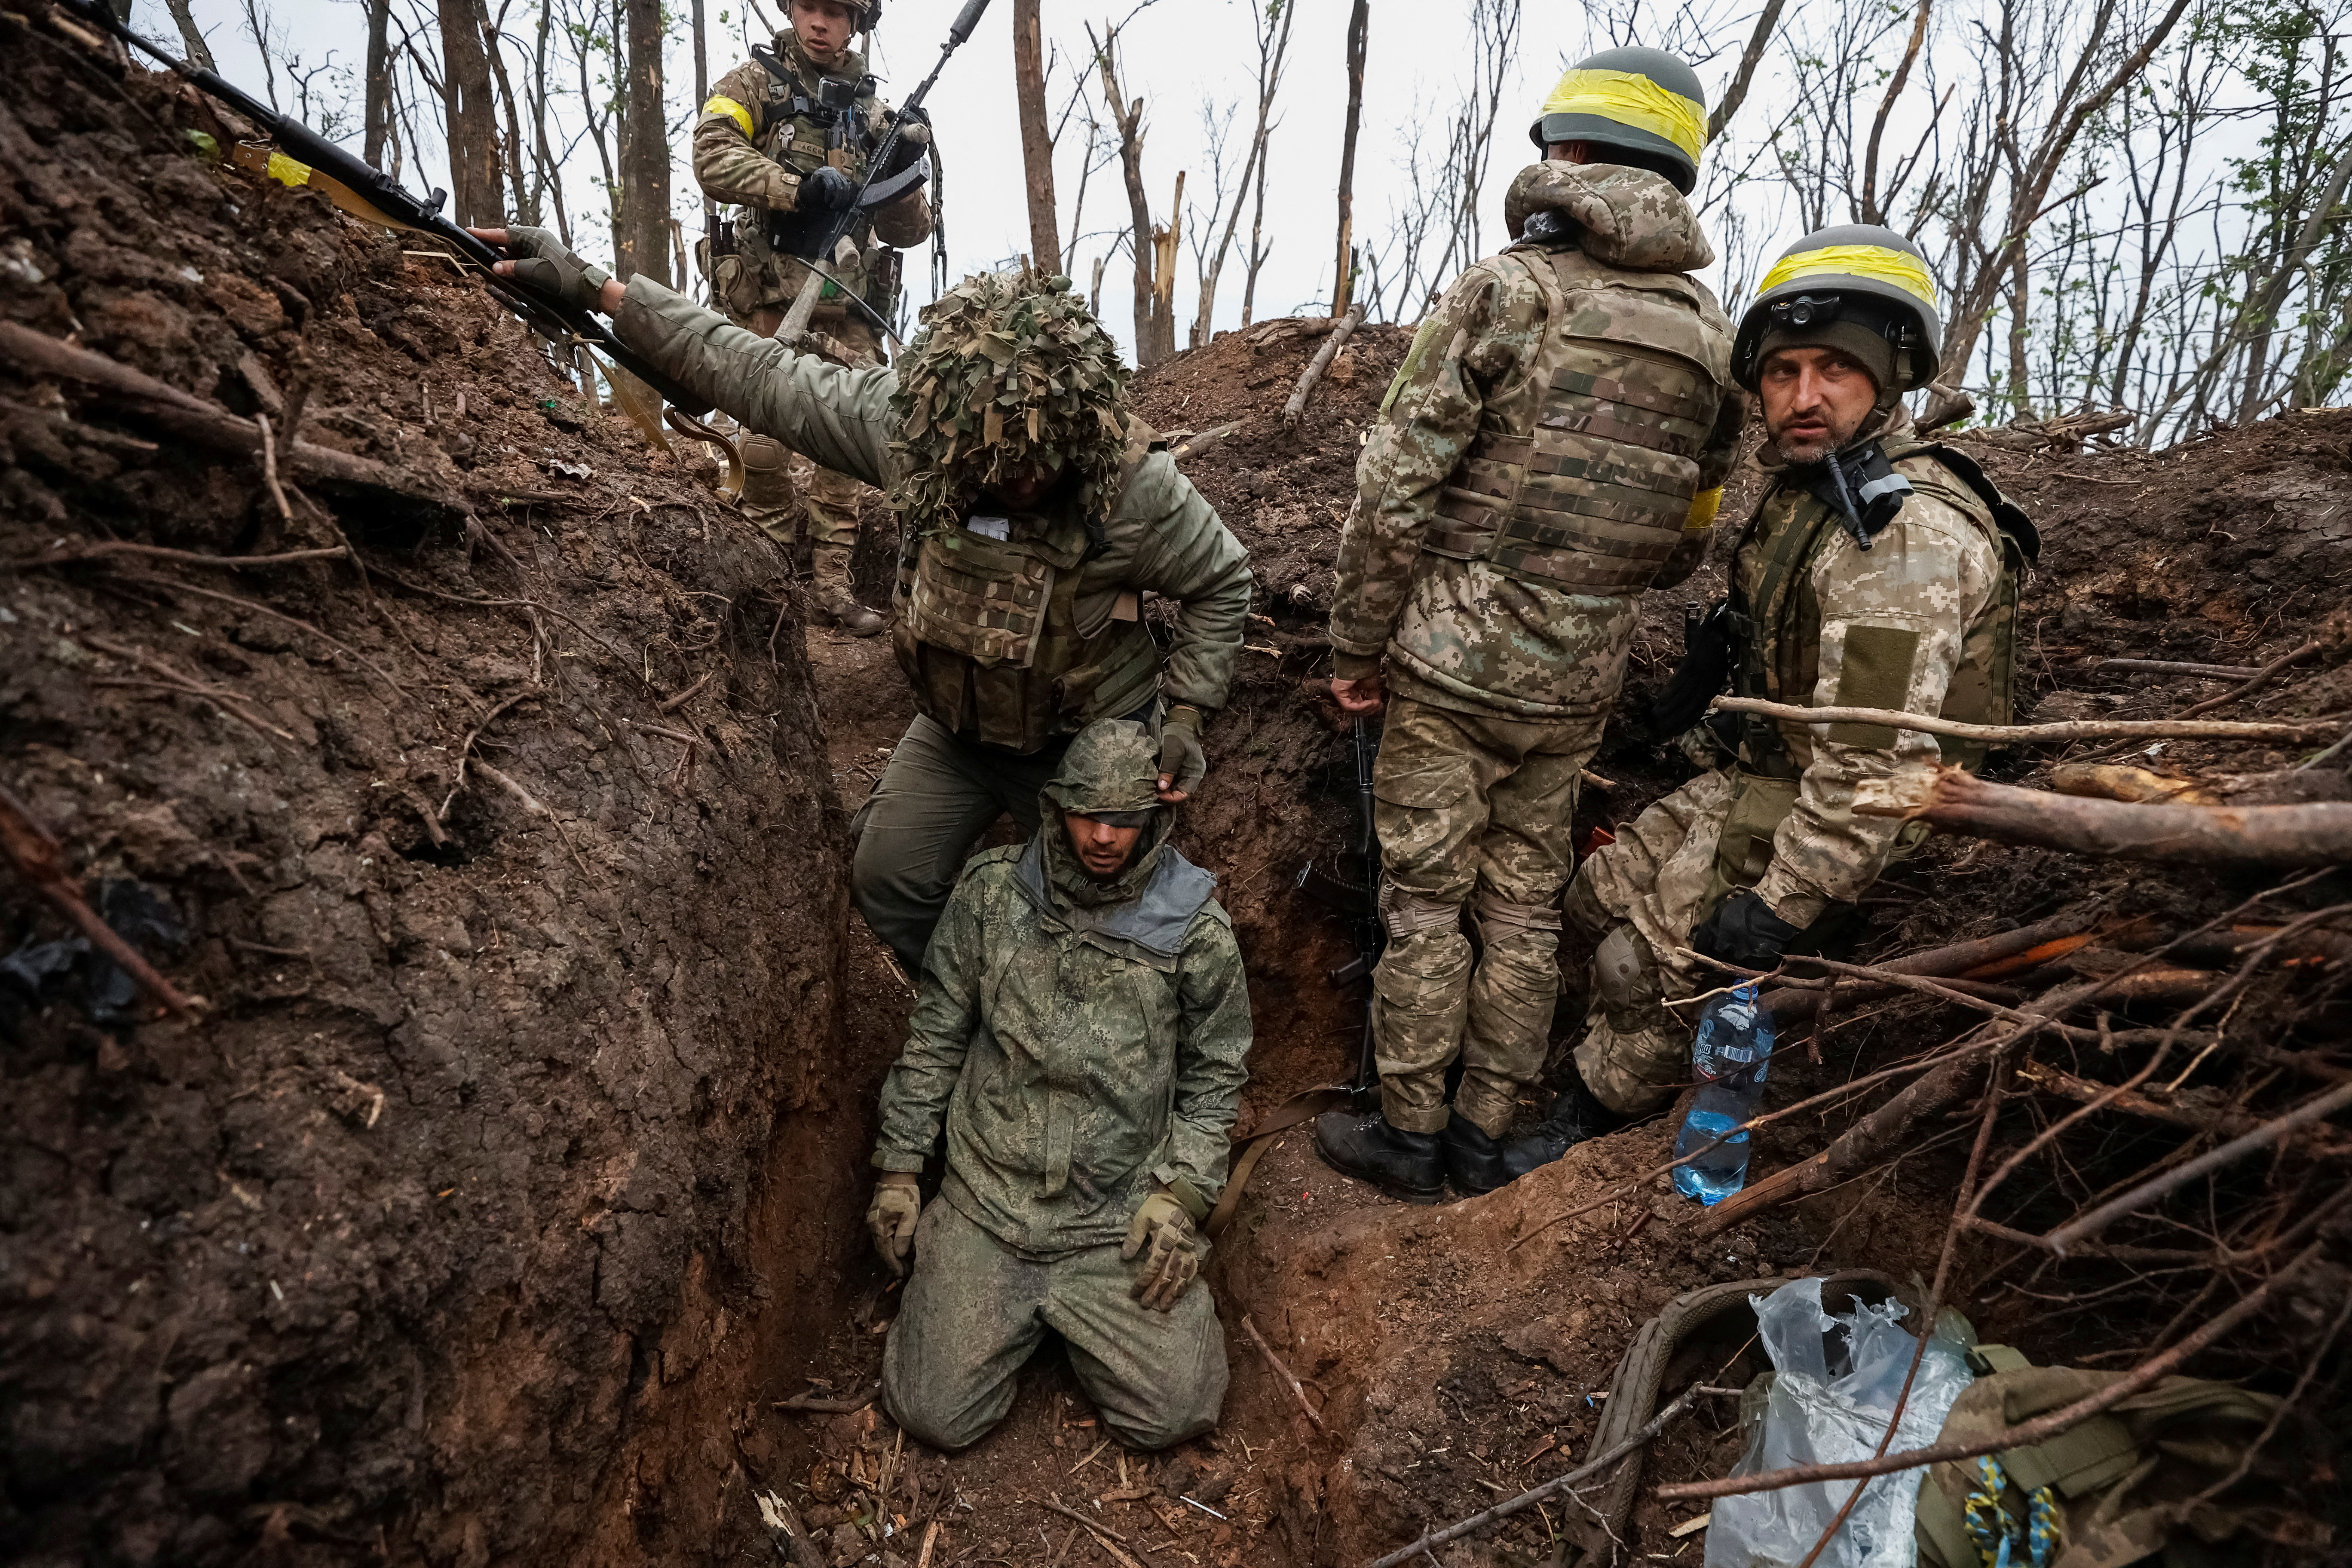 Soldados ucranianos permanecen junto a un militar del ejército ruso capturado, según ellos, en posiciones recientemente ganadas en una ofensiva, mientras continúa el ataque de Rusia a Ucrania, cerca de la ciudad de Bakhmut (Reuters)